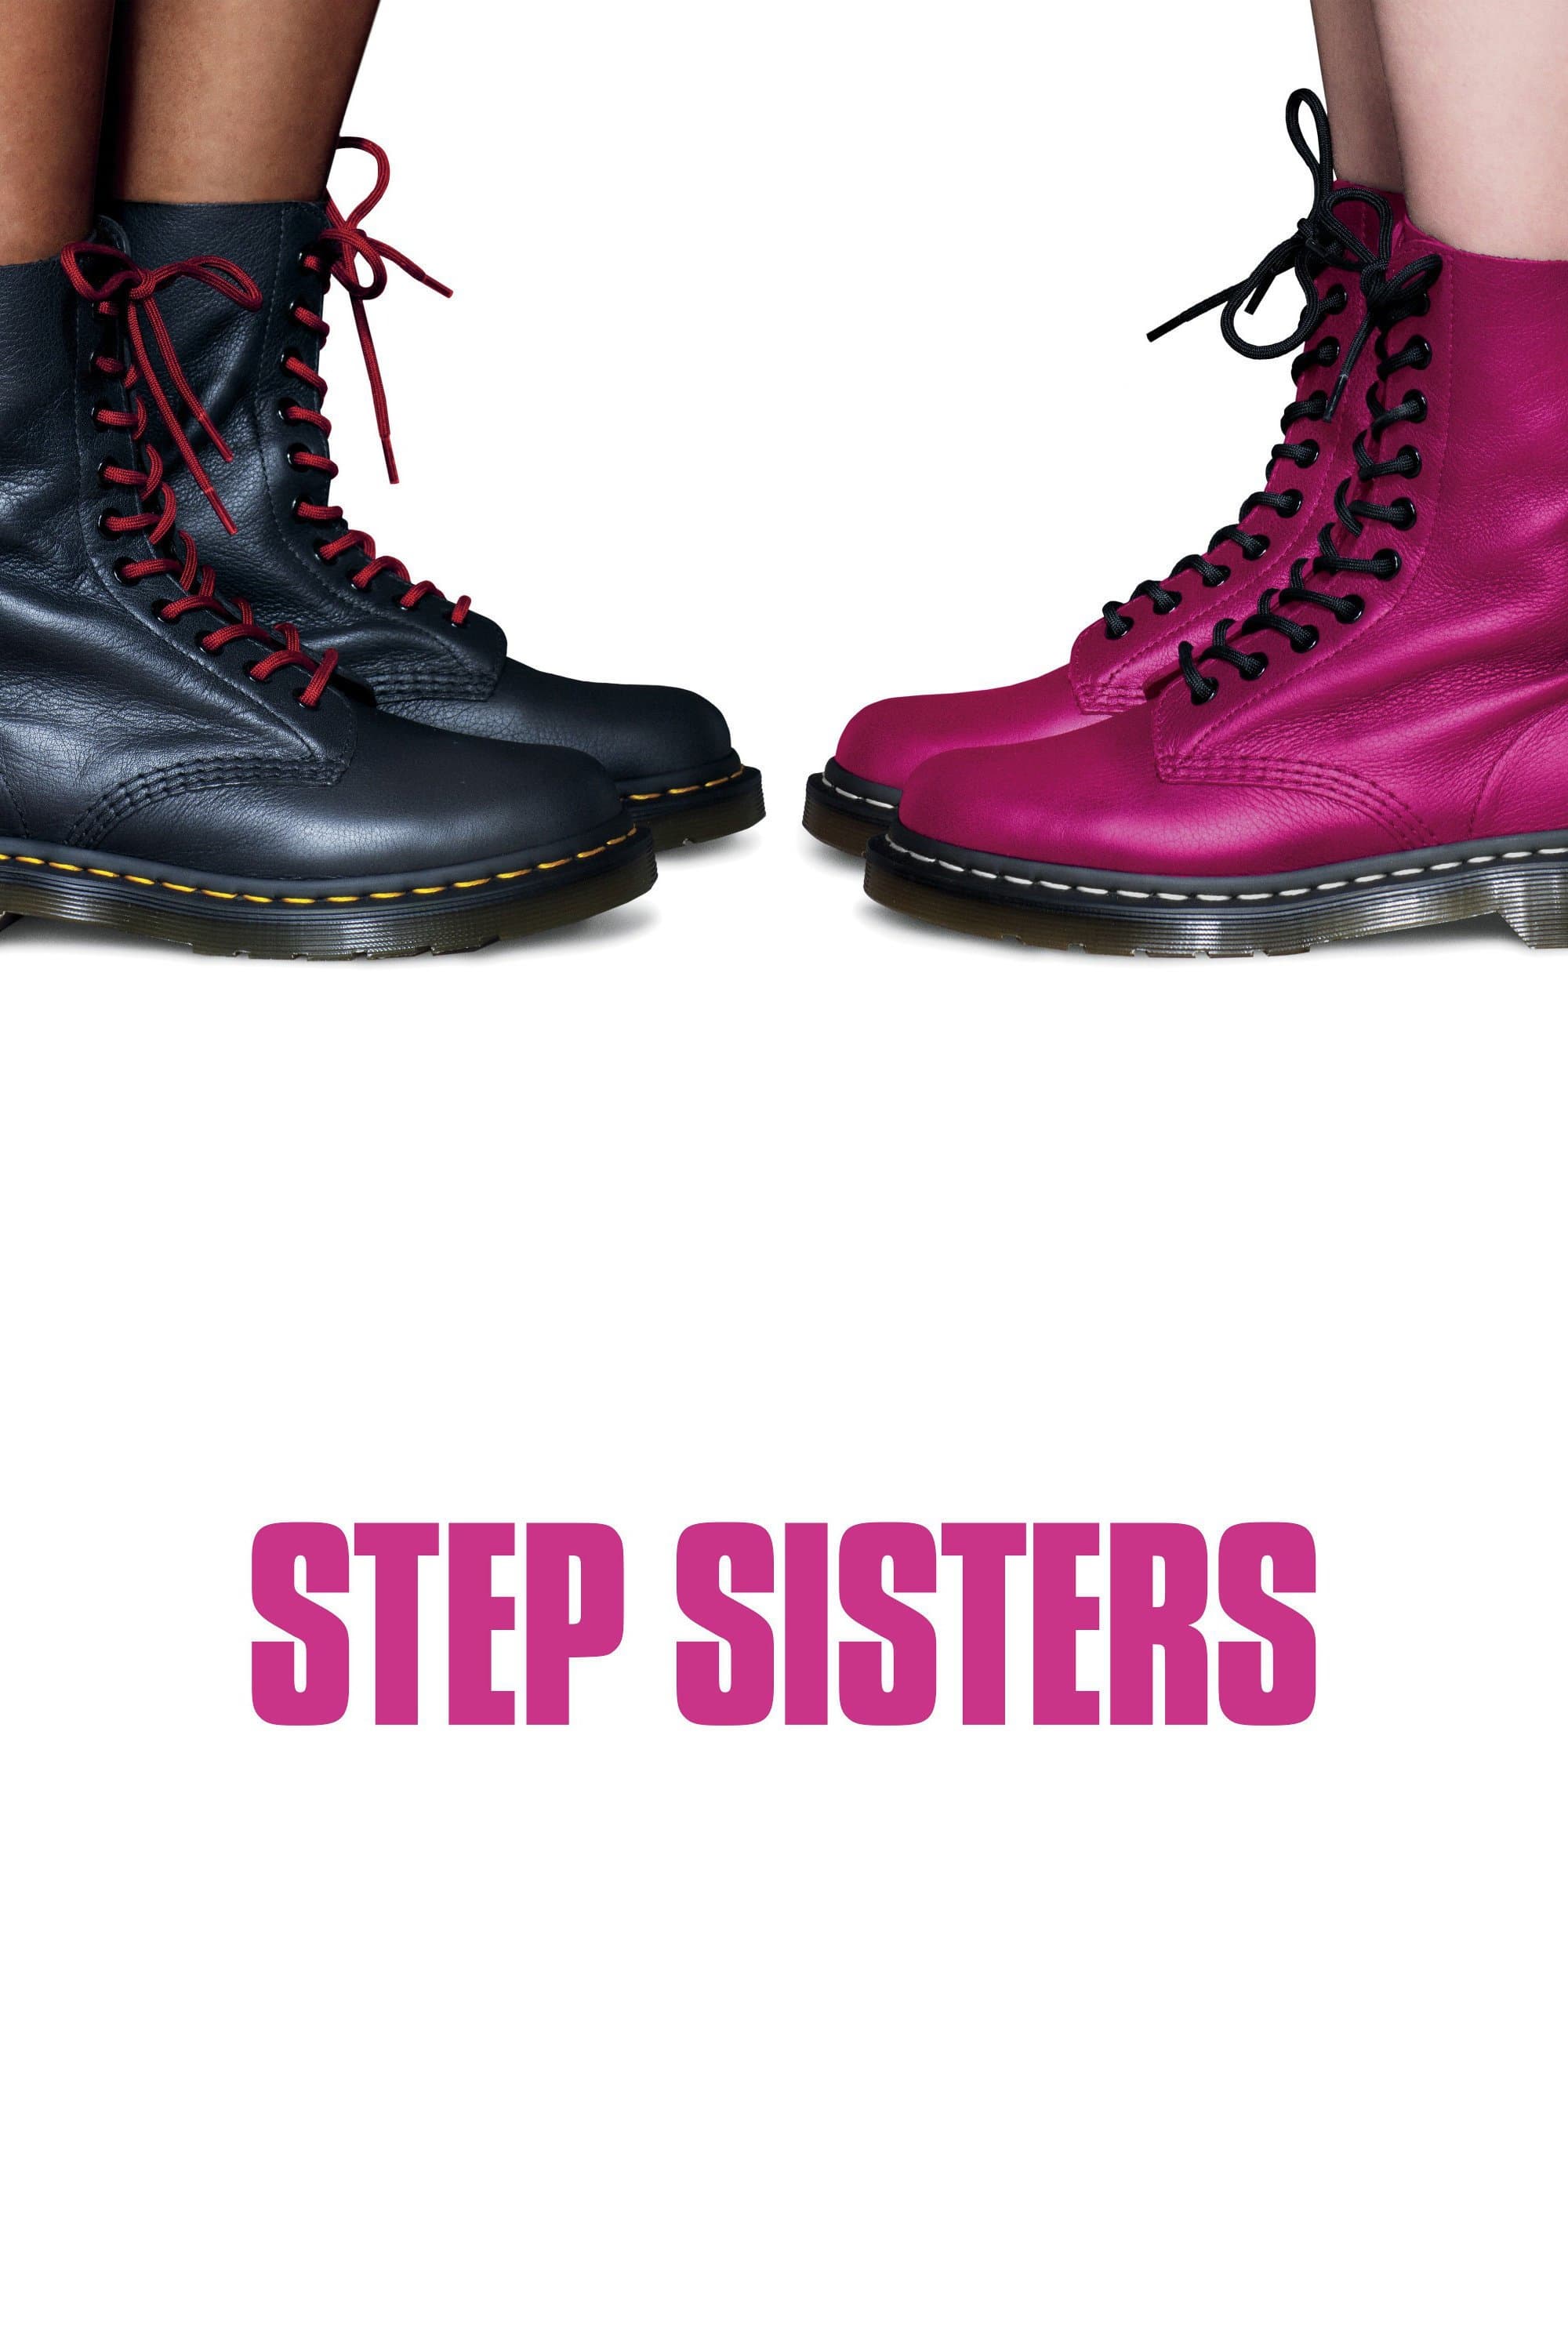 Step Sisters film